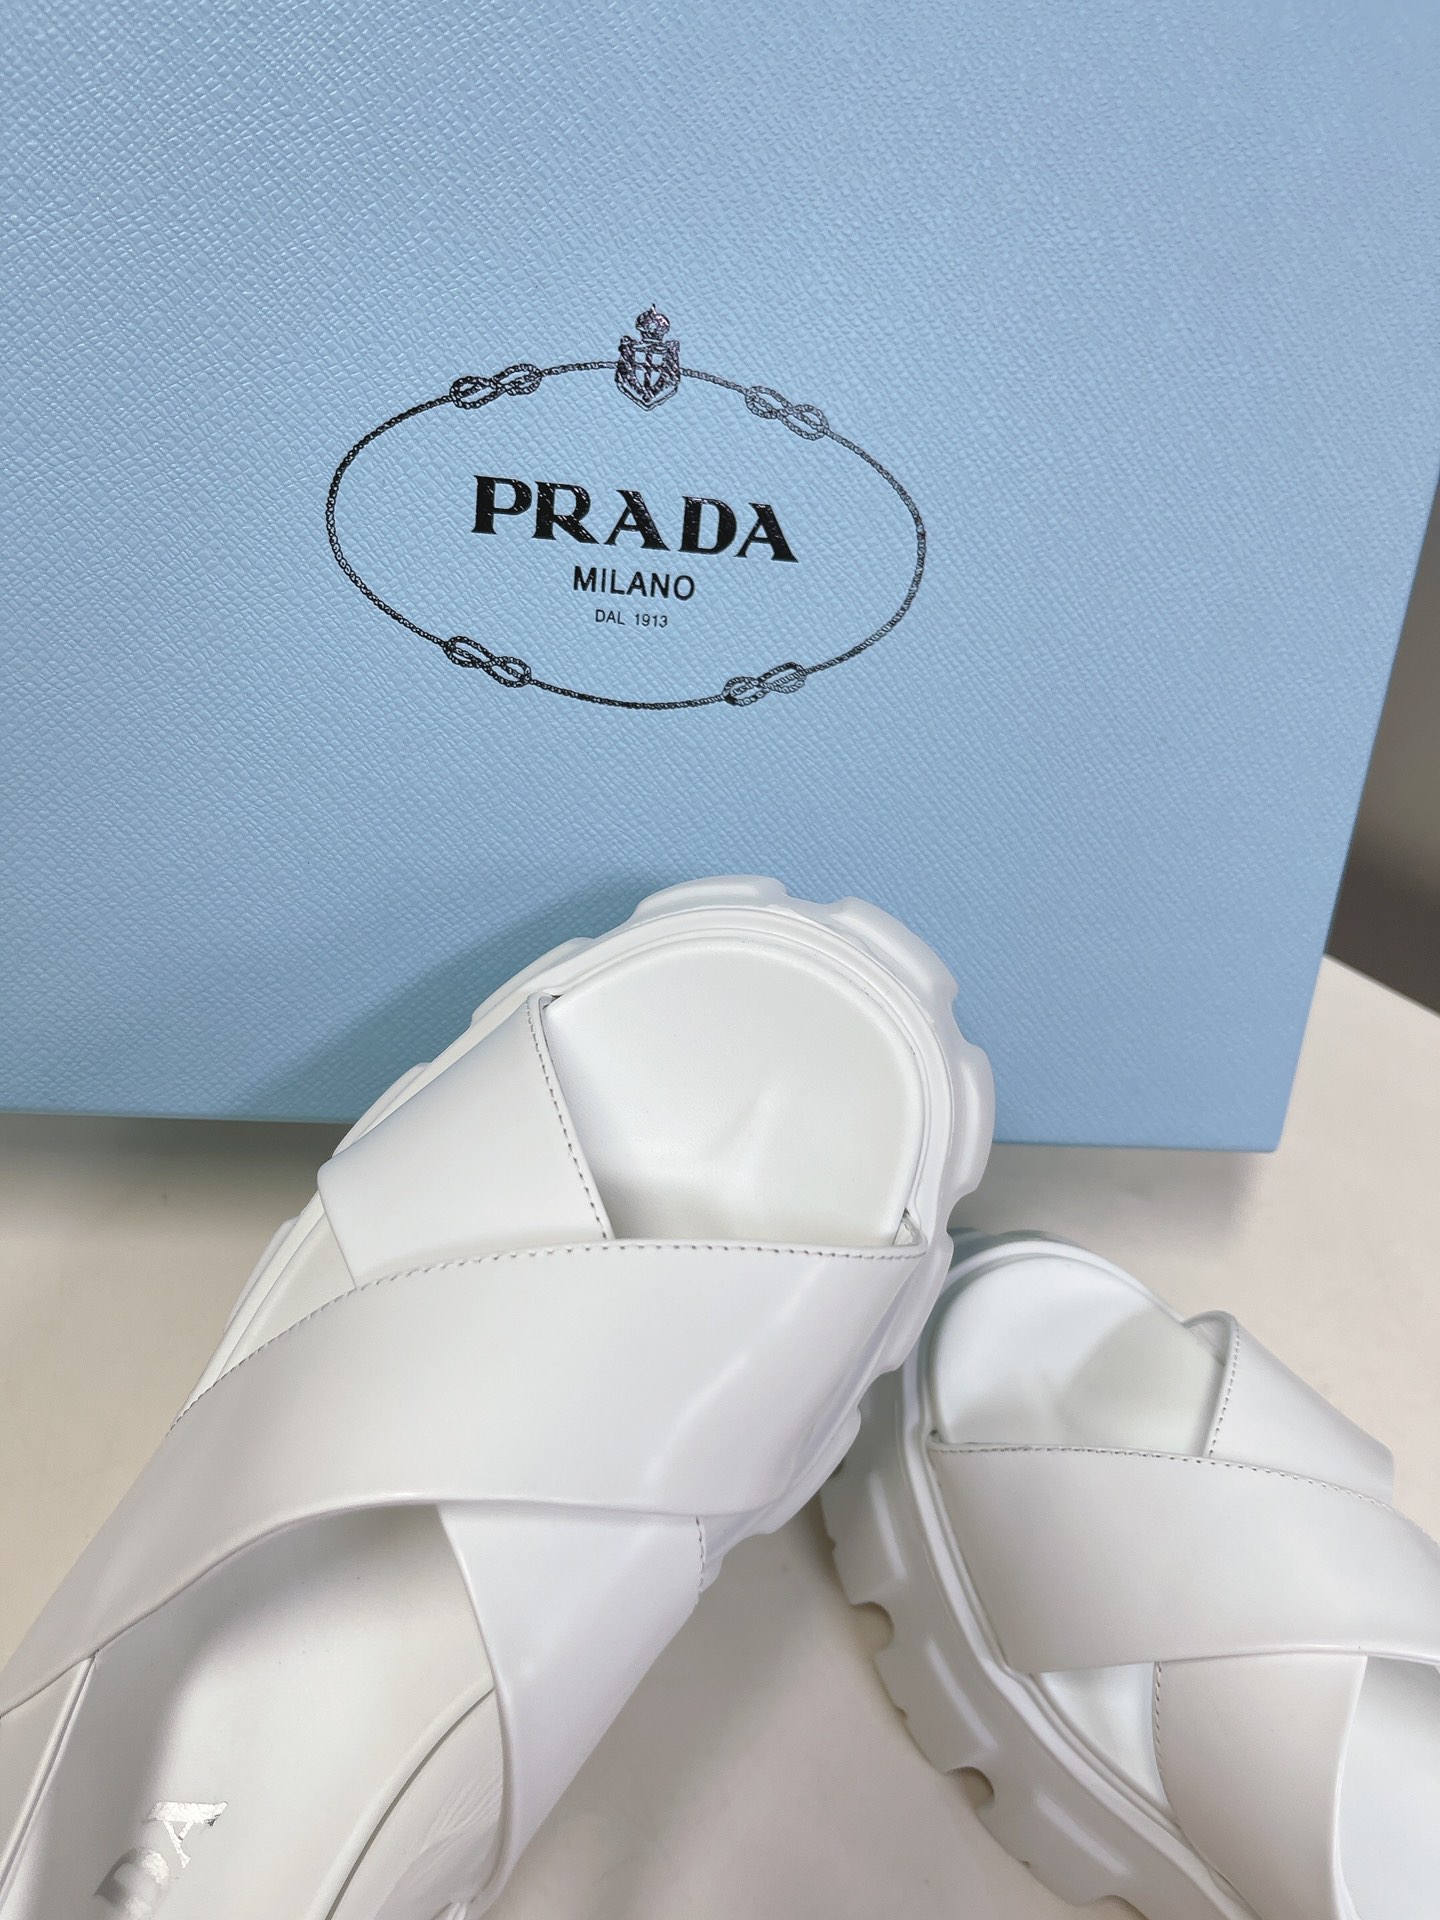 RADA普拉达夏季走秀新款面包鞋系列